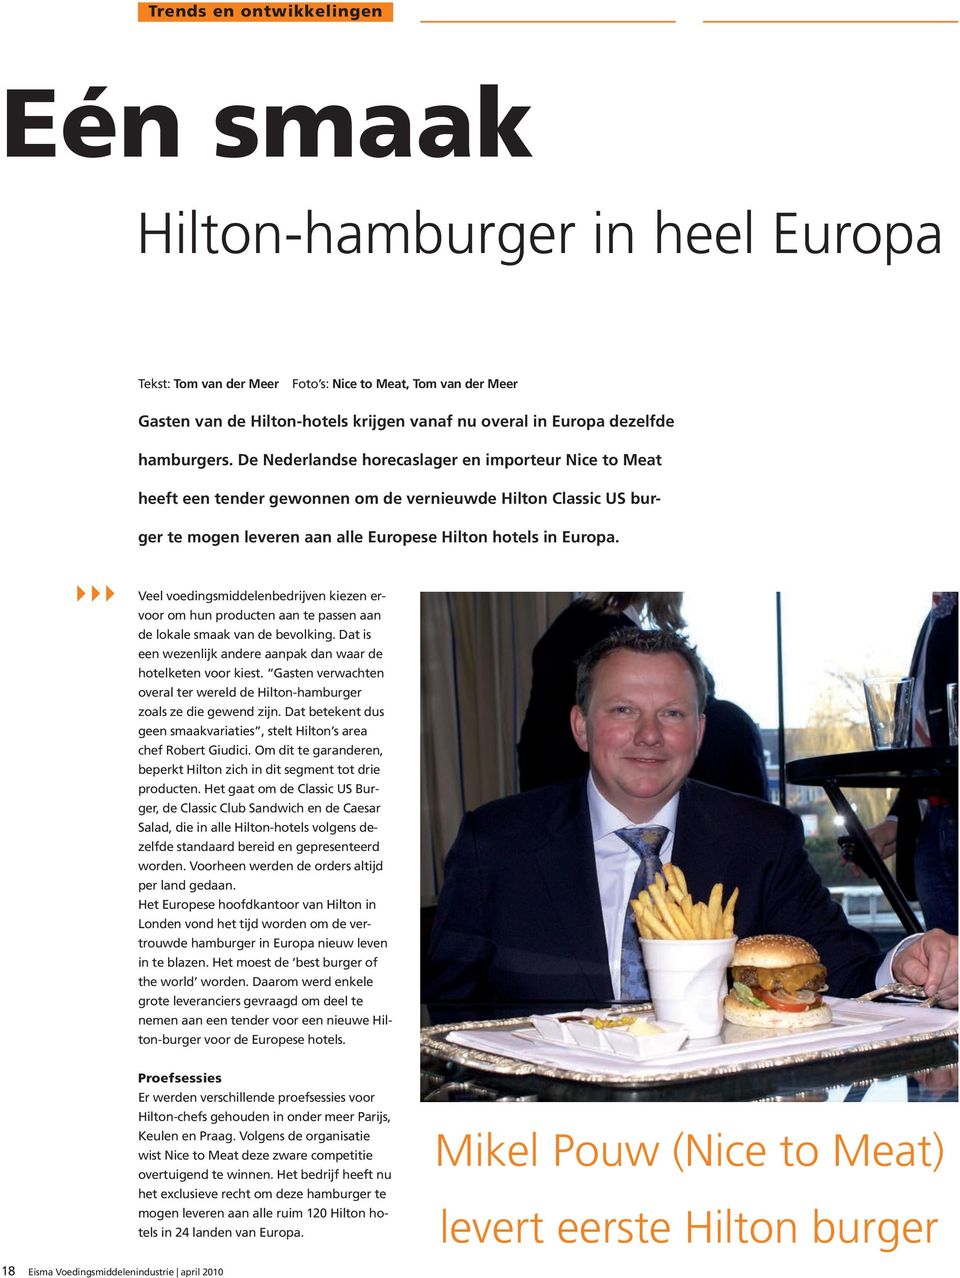 De Nederlandse horecaslager en importeur Nice to Meat heeft een tender gewonnen om de vernieuwde Hilton Classic US burger te mogen leveren aan alle Europese Hilton hotels in Europa.